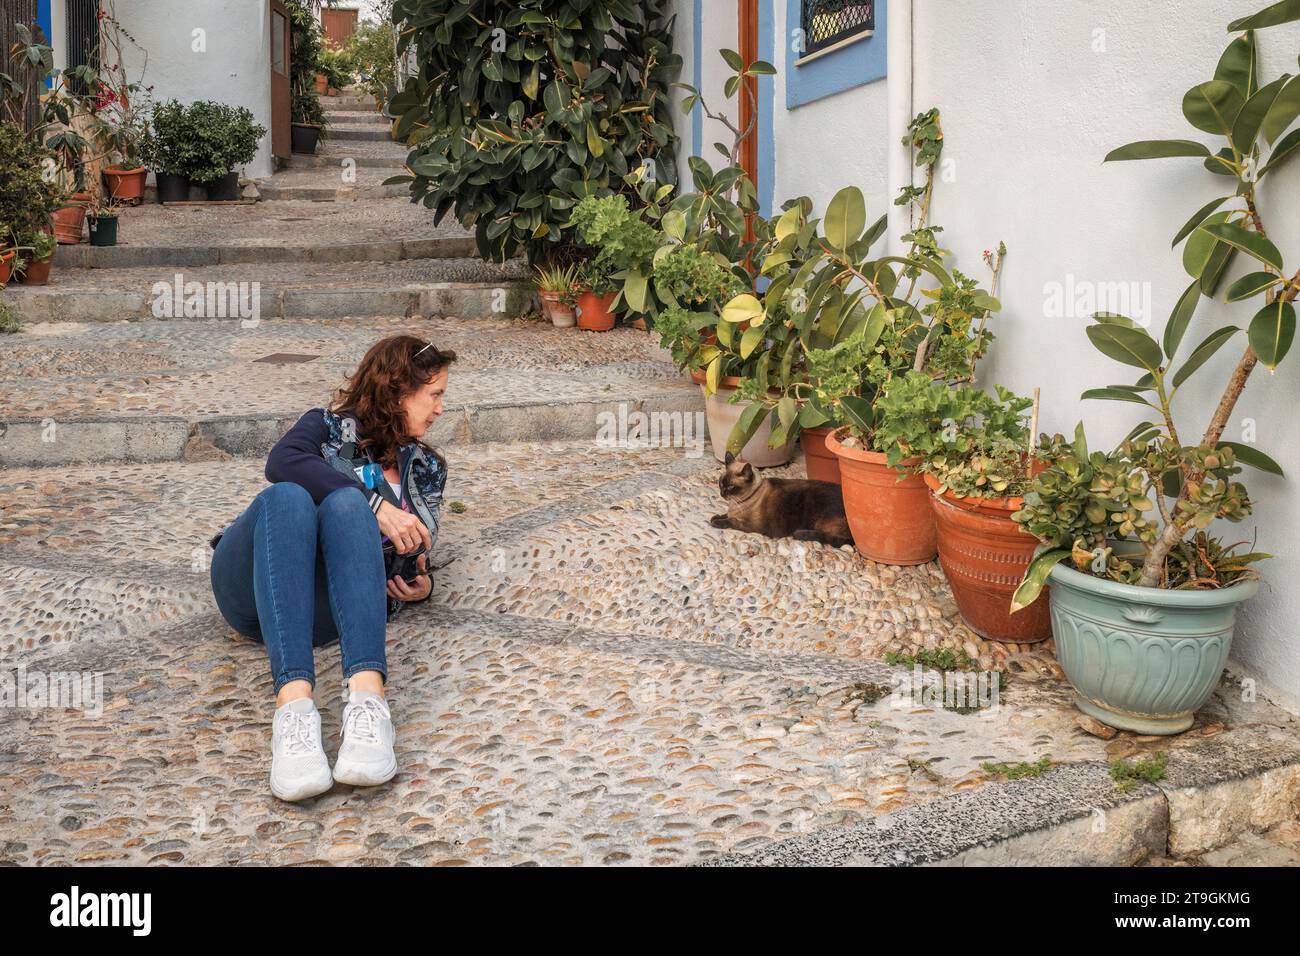 Femme couchée sur le sol portant un Jean et une veste parlant à un chat dans une rue pavée avec des escaliers dans la ville de Peñiscola, Castellon, Espagne. Banque D'Images